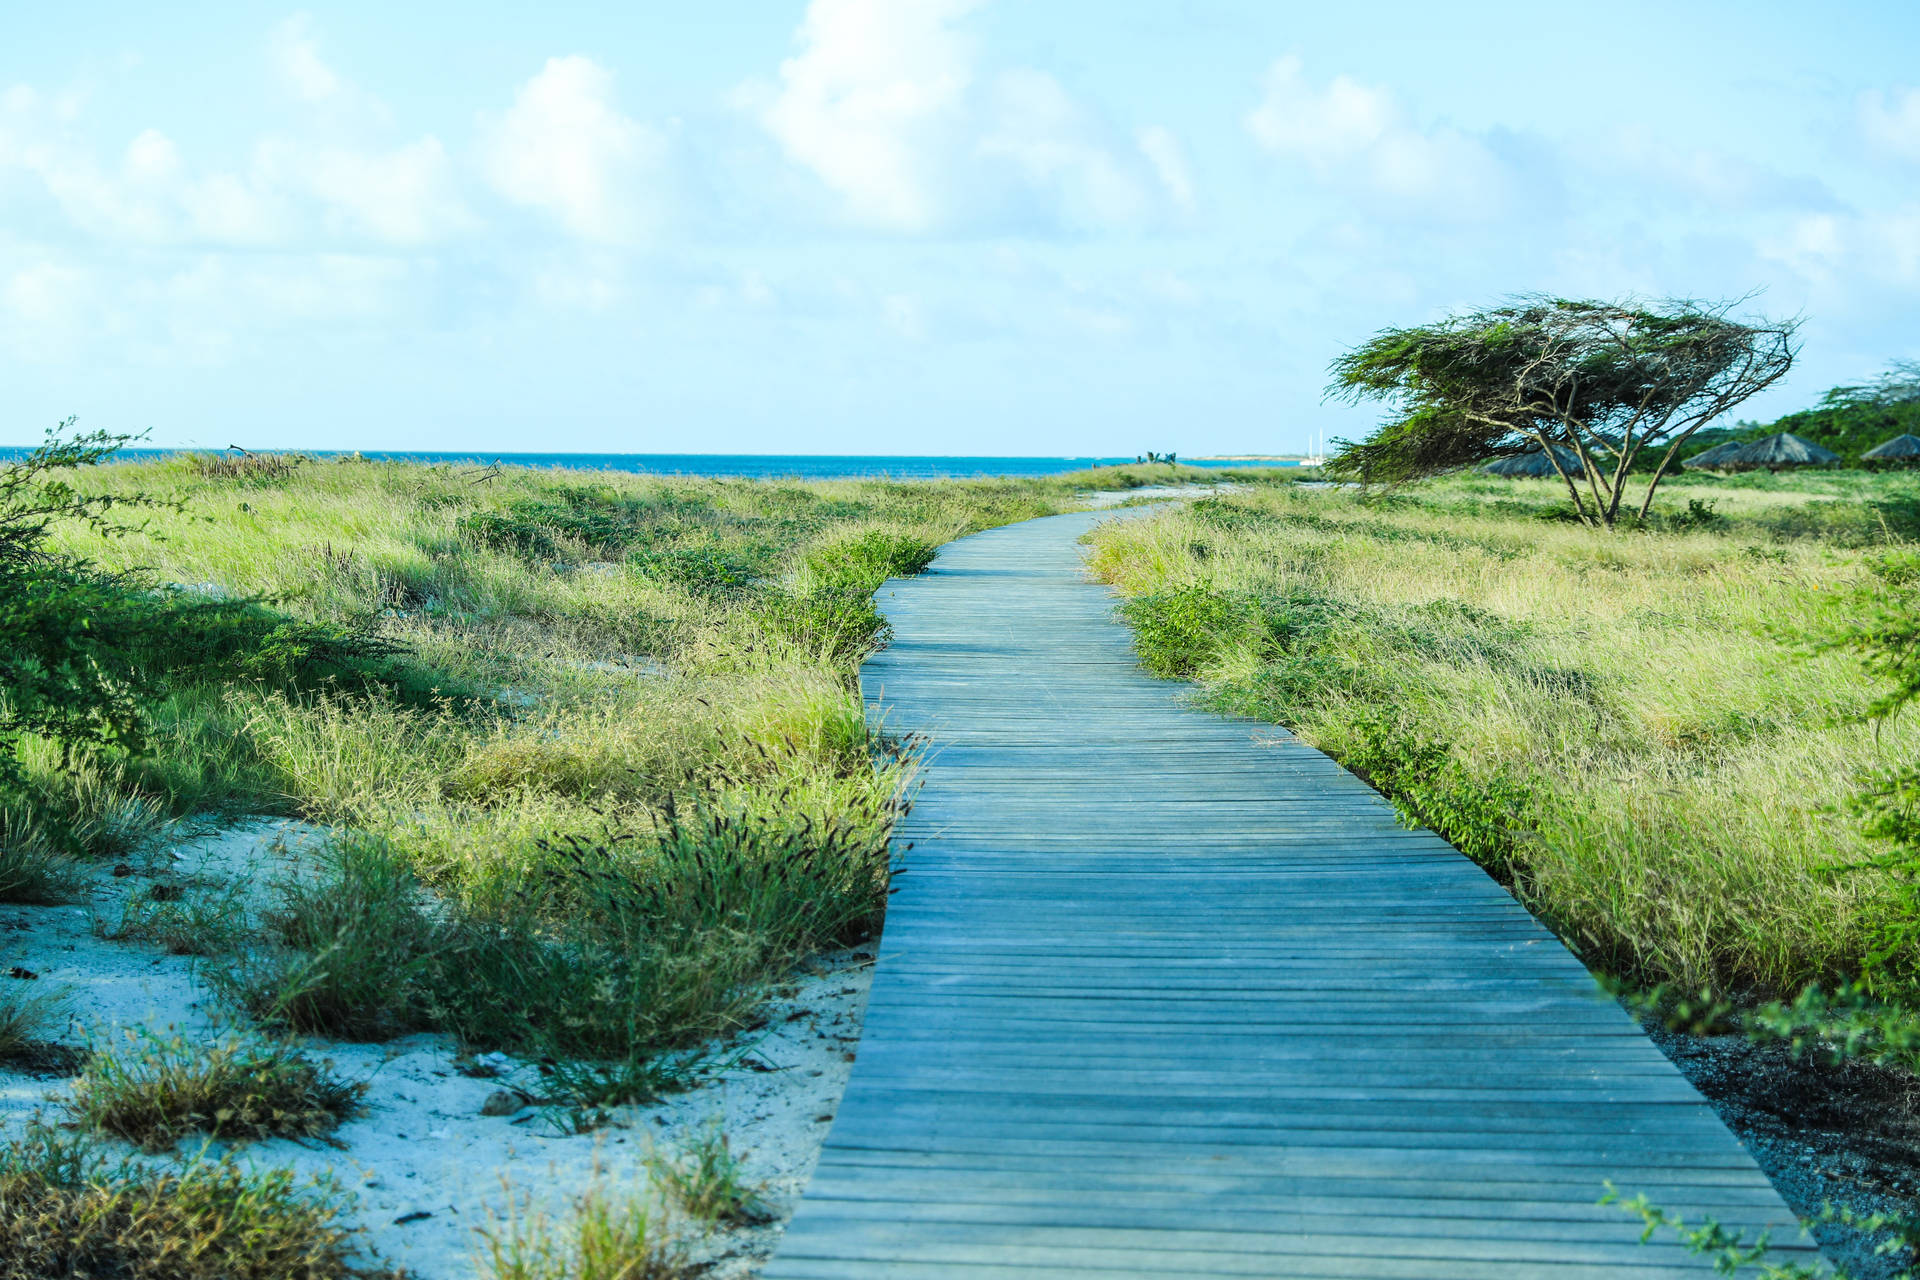 Aruba Boardwalk Landscape